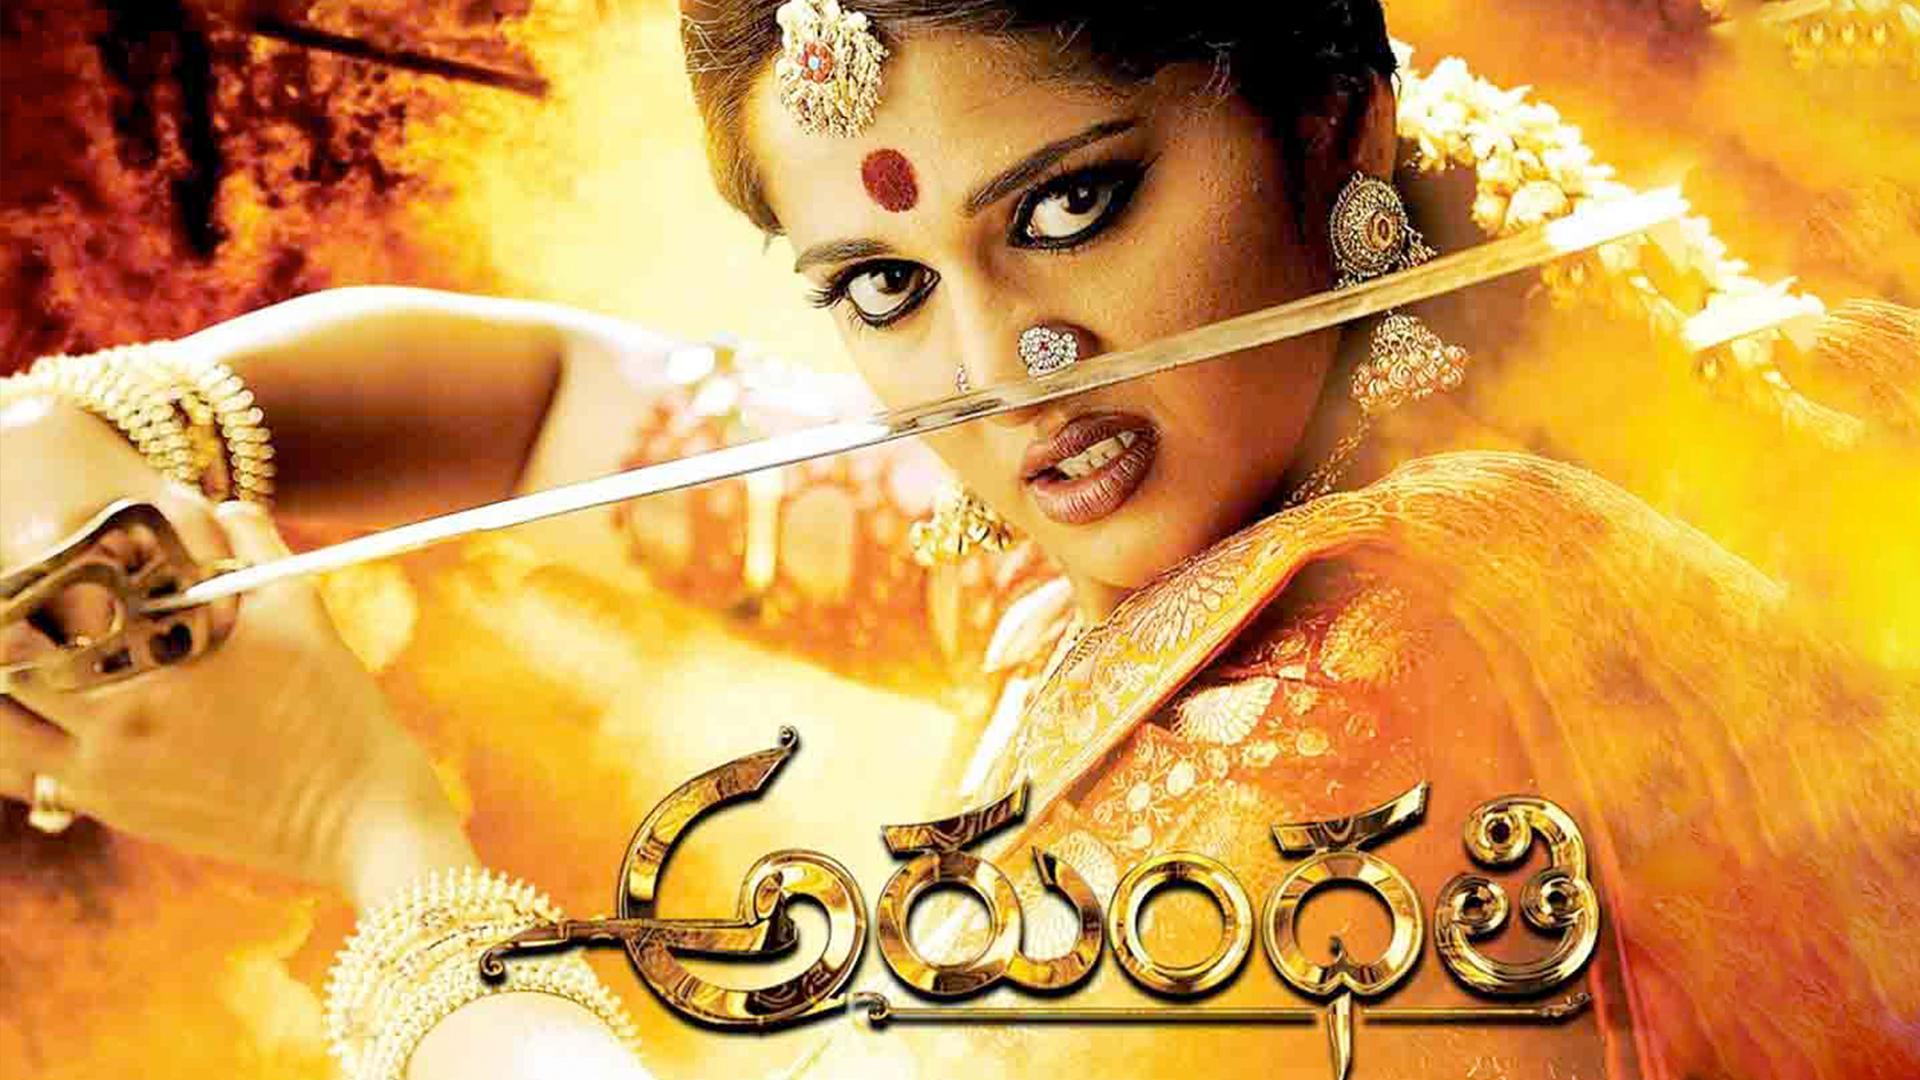 Telugu movie avatharam